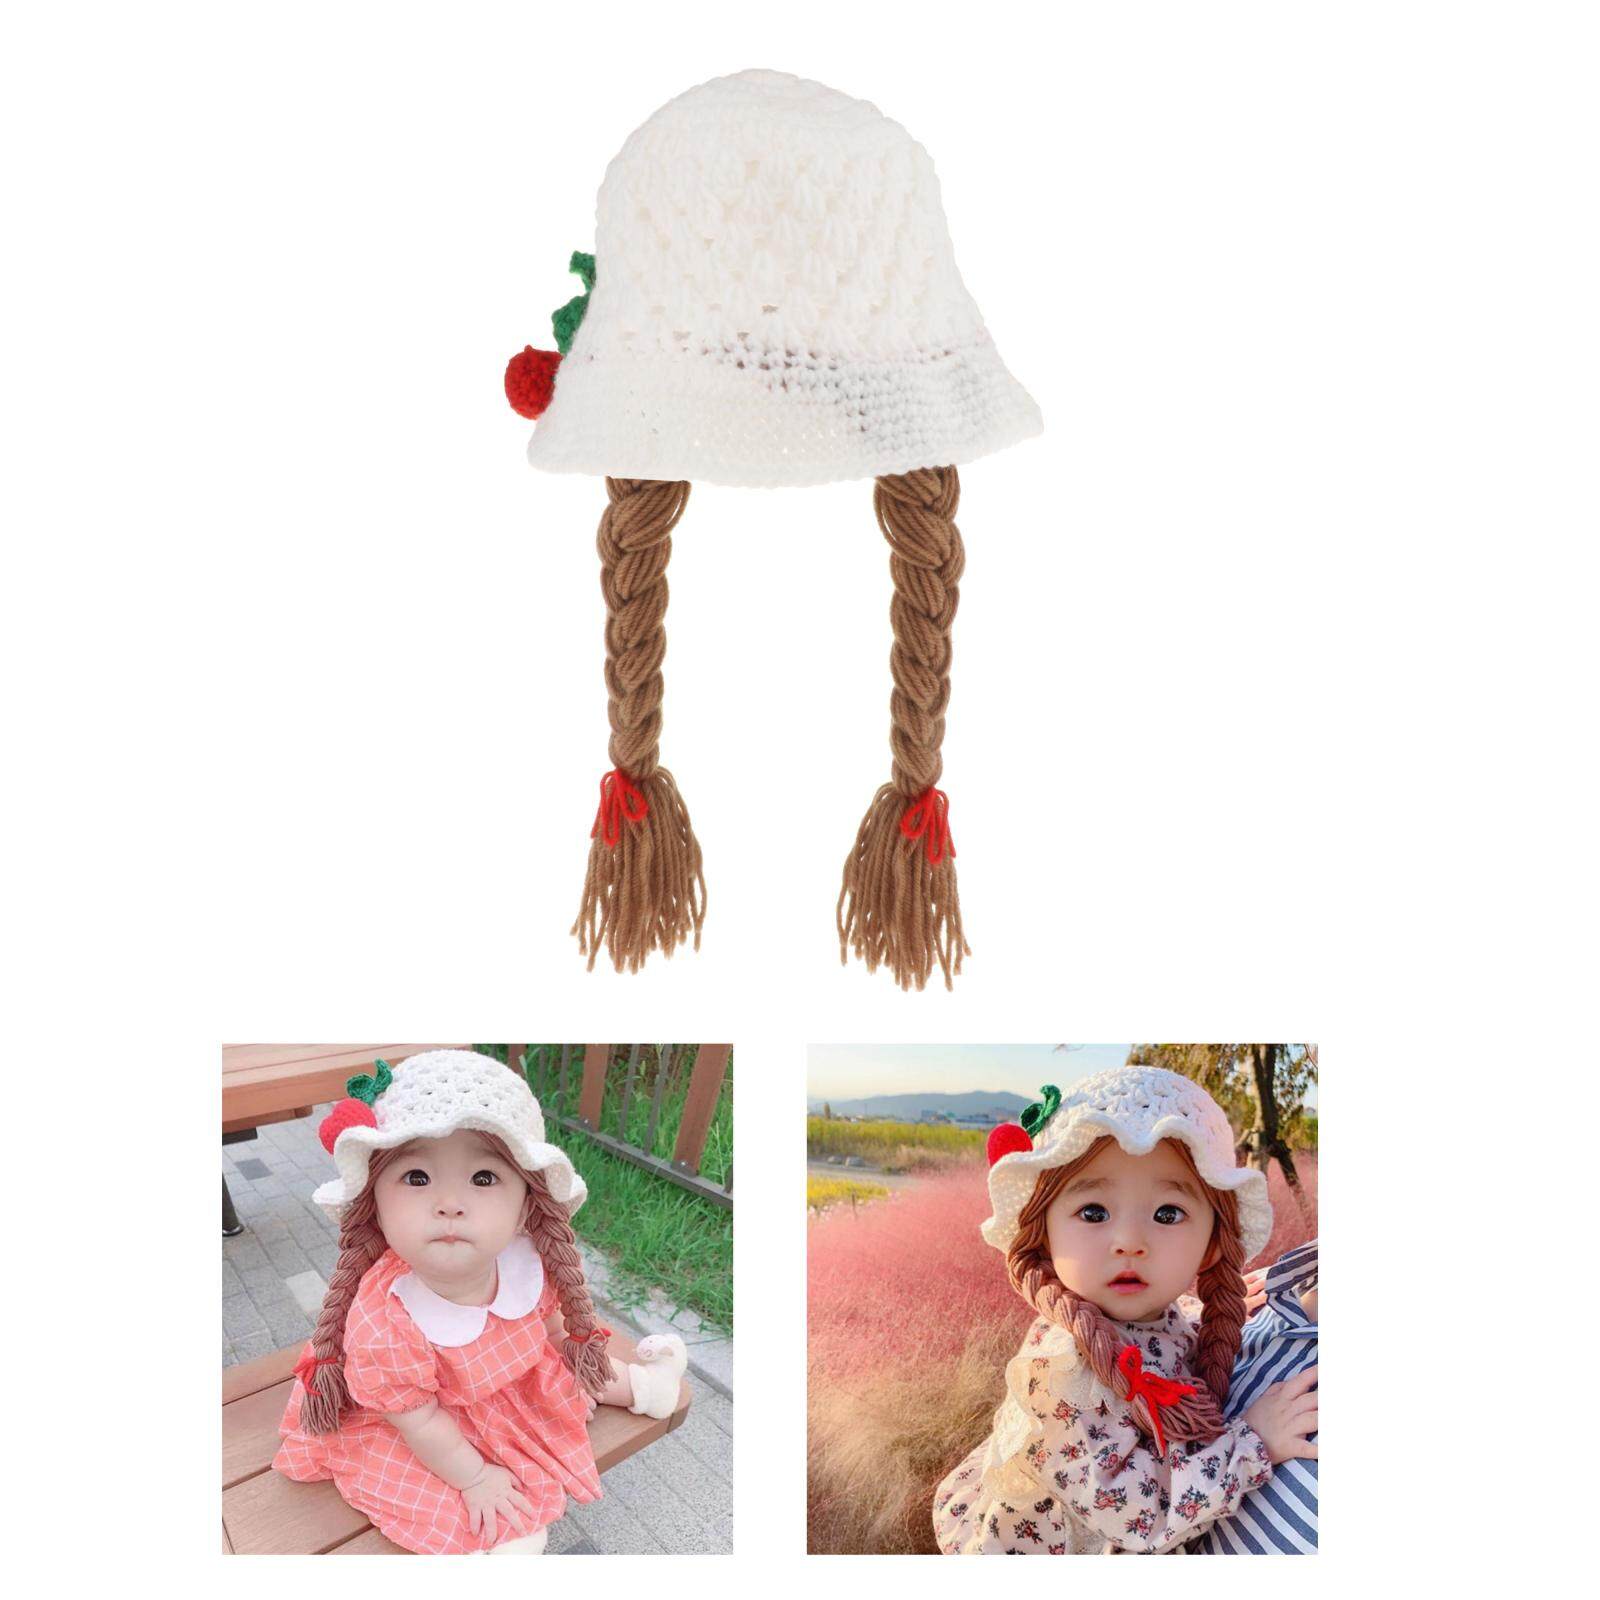 GuangquanStrade เด็กถักหมวกเด็กชายเด็กหญิงหมวกถักทรง Beanie ทารกถักหมวก